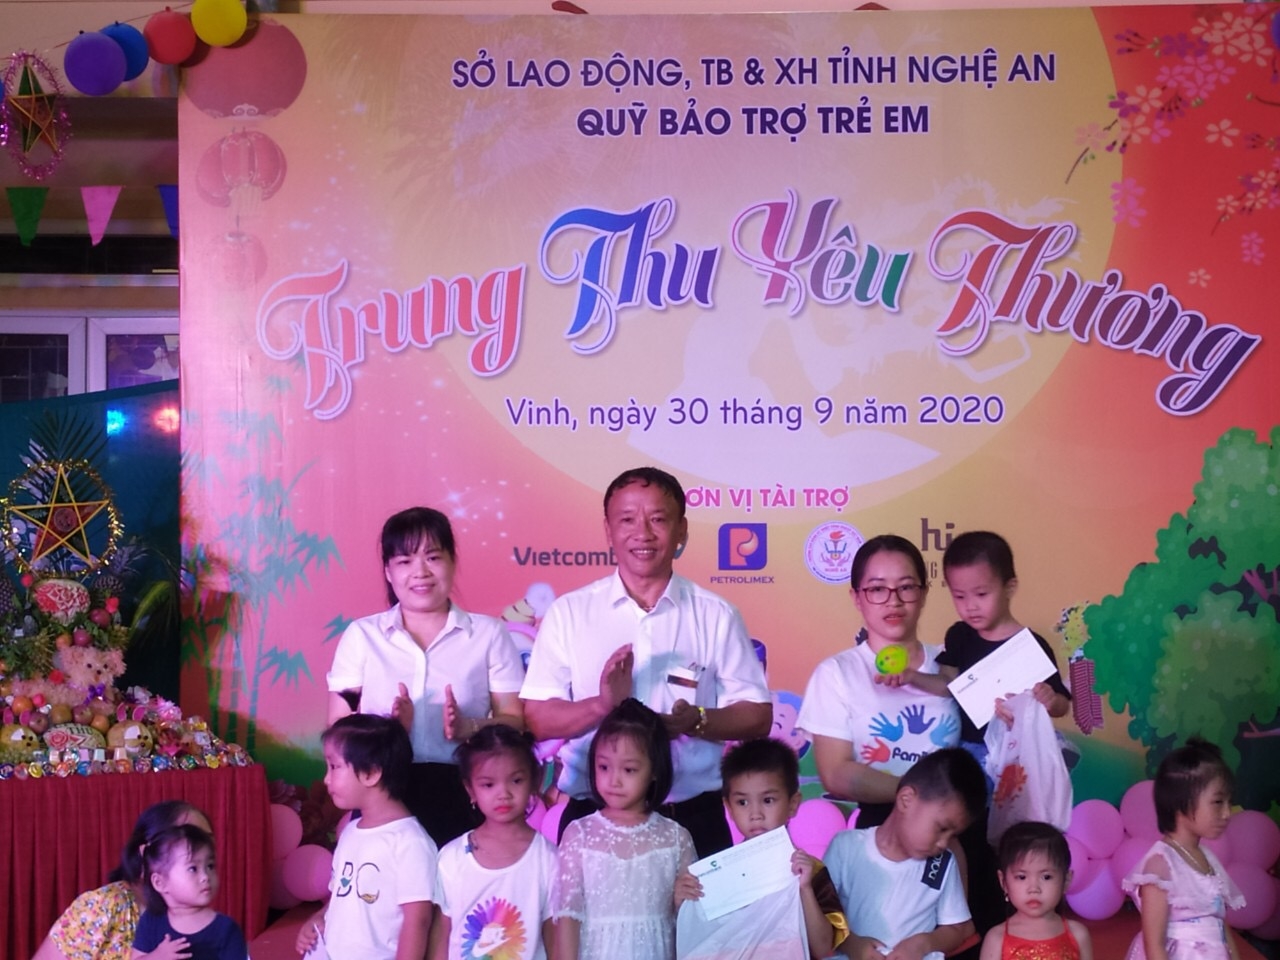 Quỹ Bảo trợ trẻ em tỉnh Nghệ An trăn trở vận động các nguồn lực để giúp đỡ trẻ em